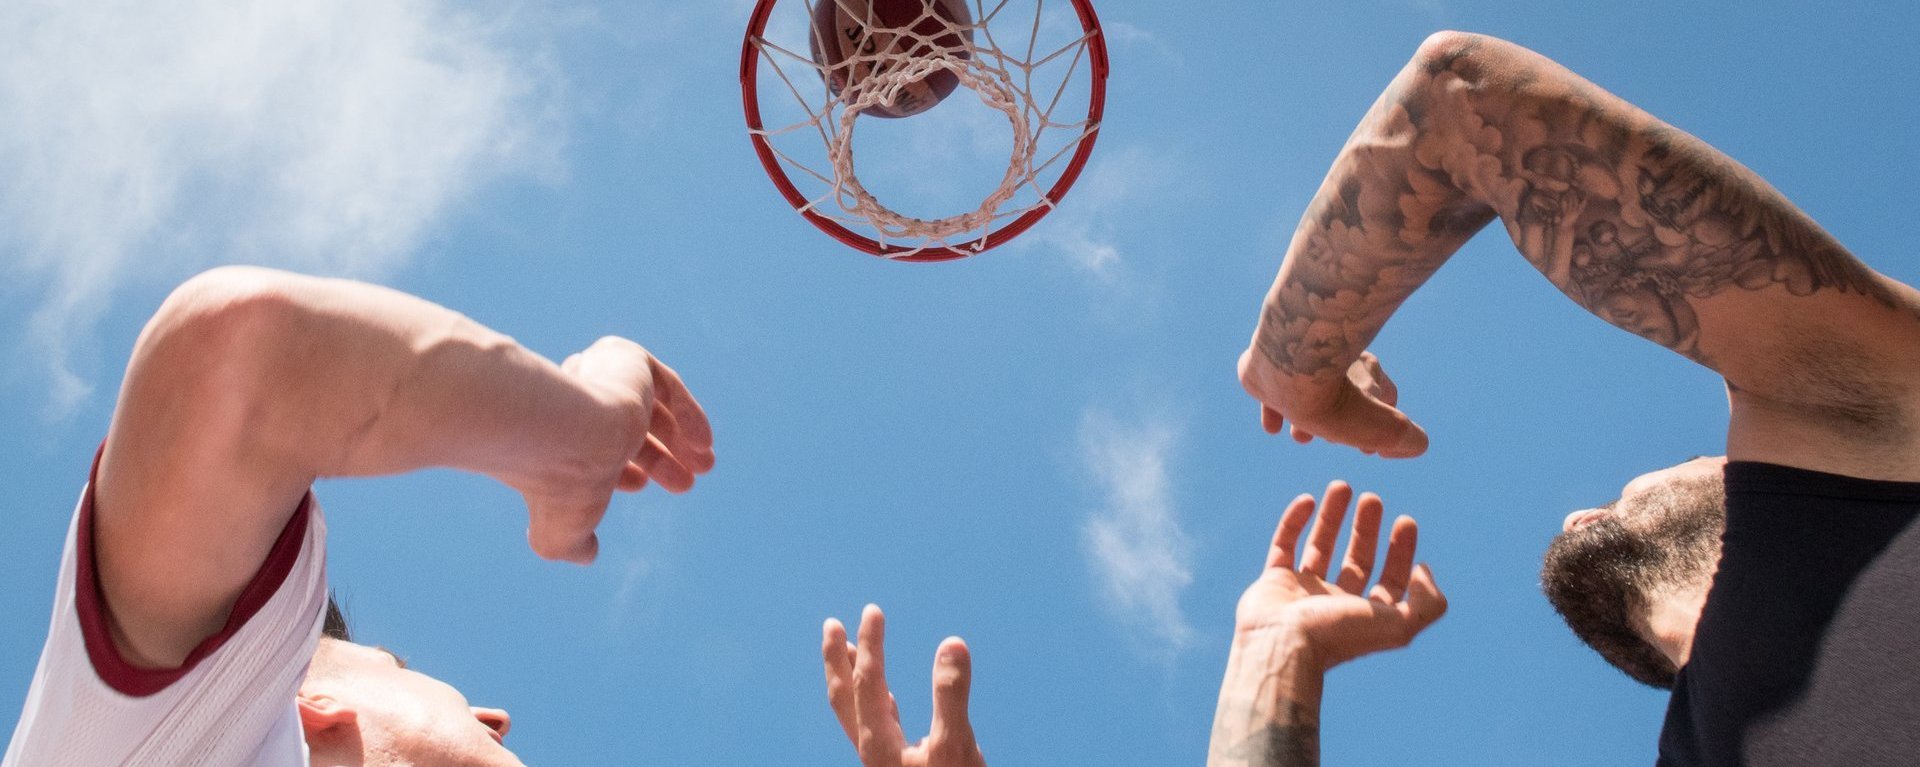 Nahaufnahme beim Sport: zwei Männer unter dem Basketballkorb - der Ball scheint gerade ins Netz zu gehen